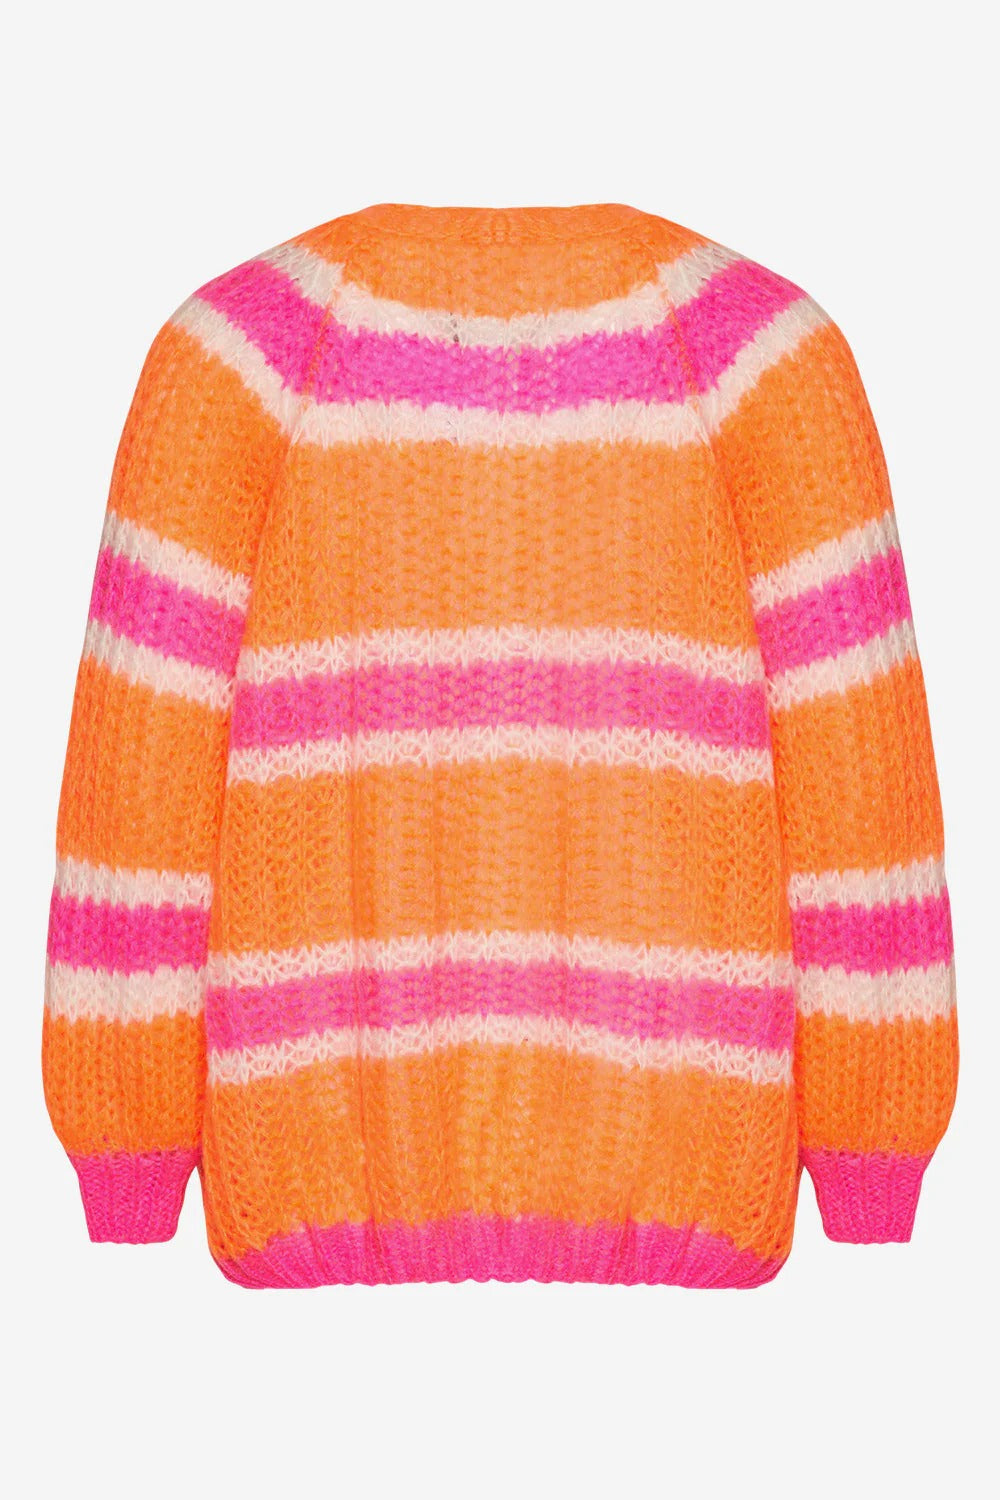 Vera Knit Cardigan Orange/pink